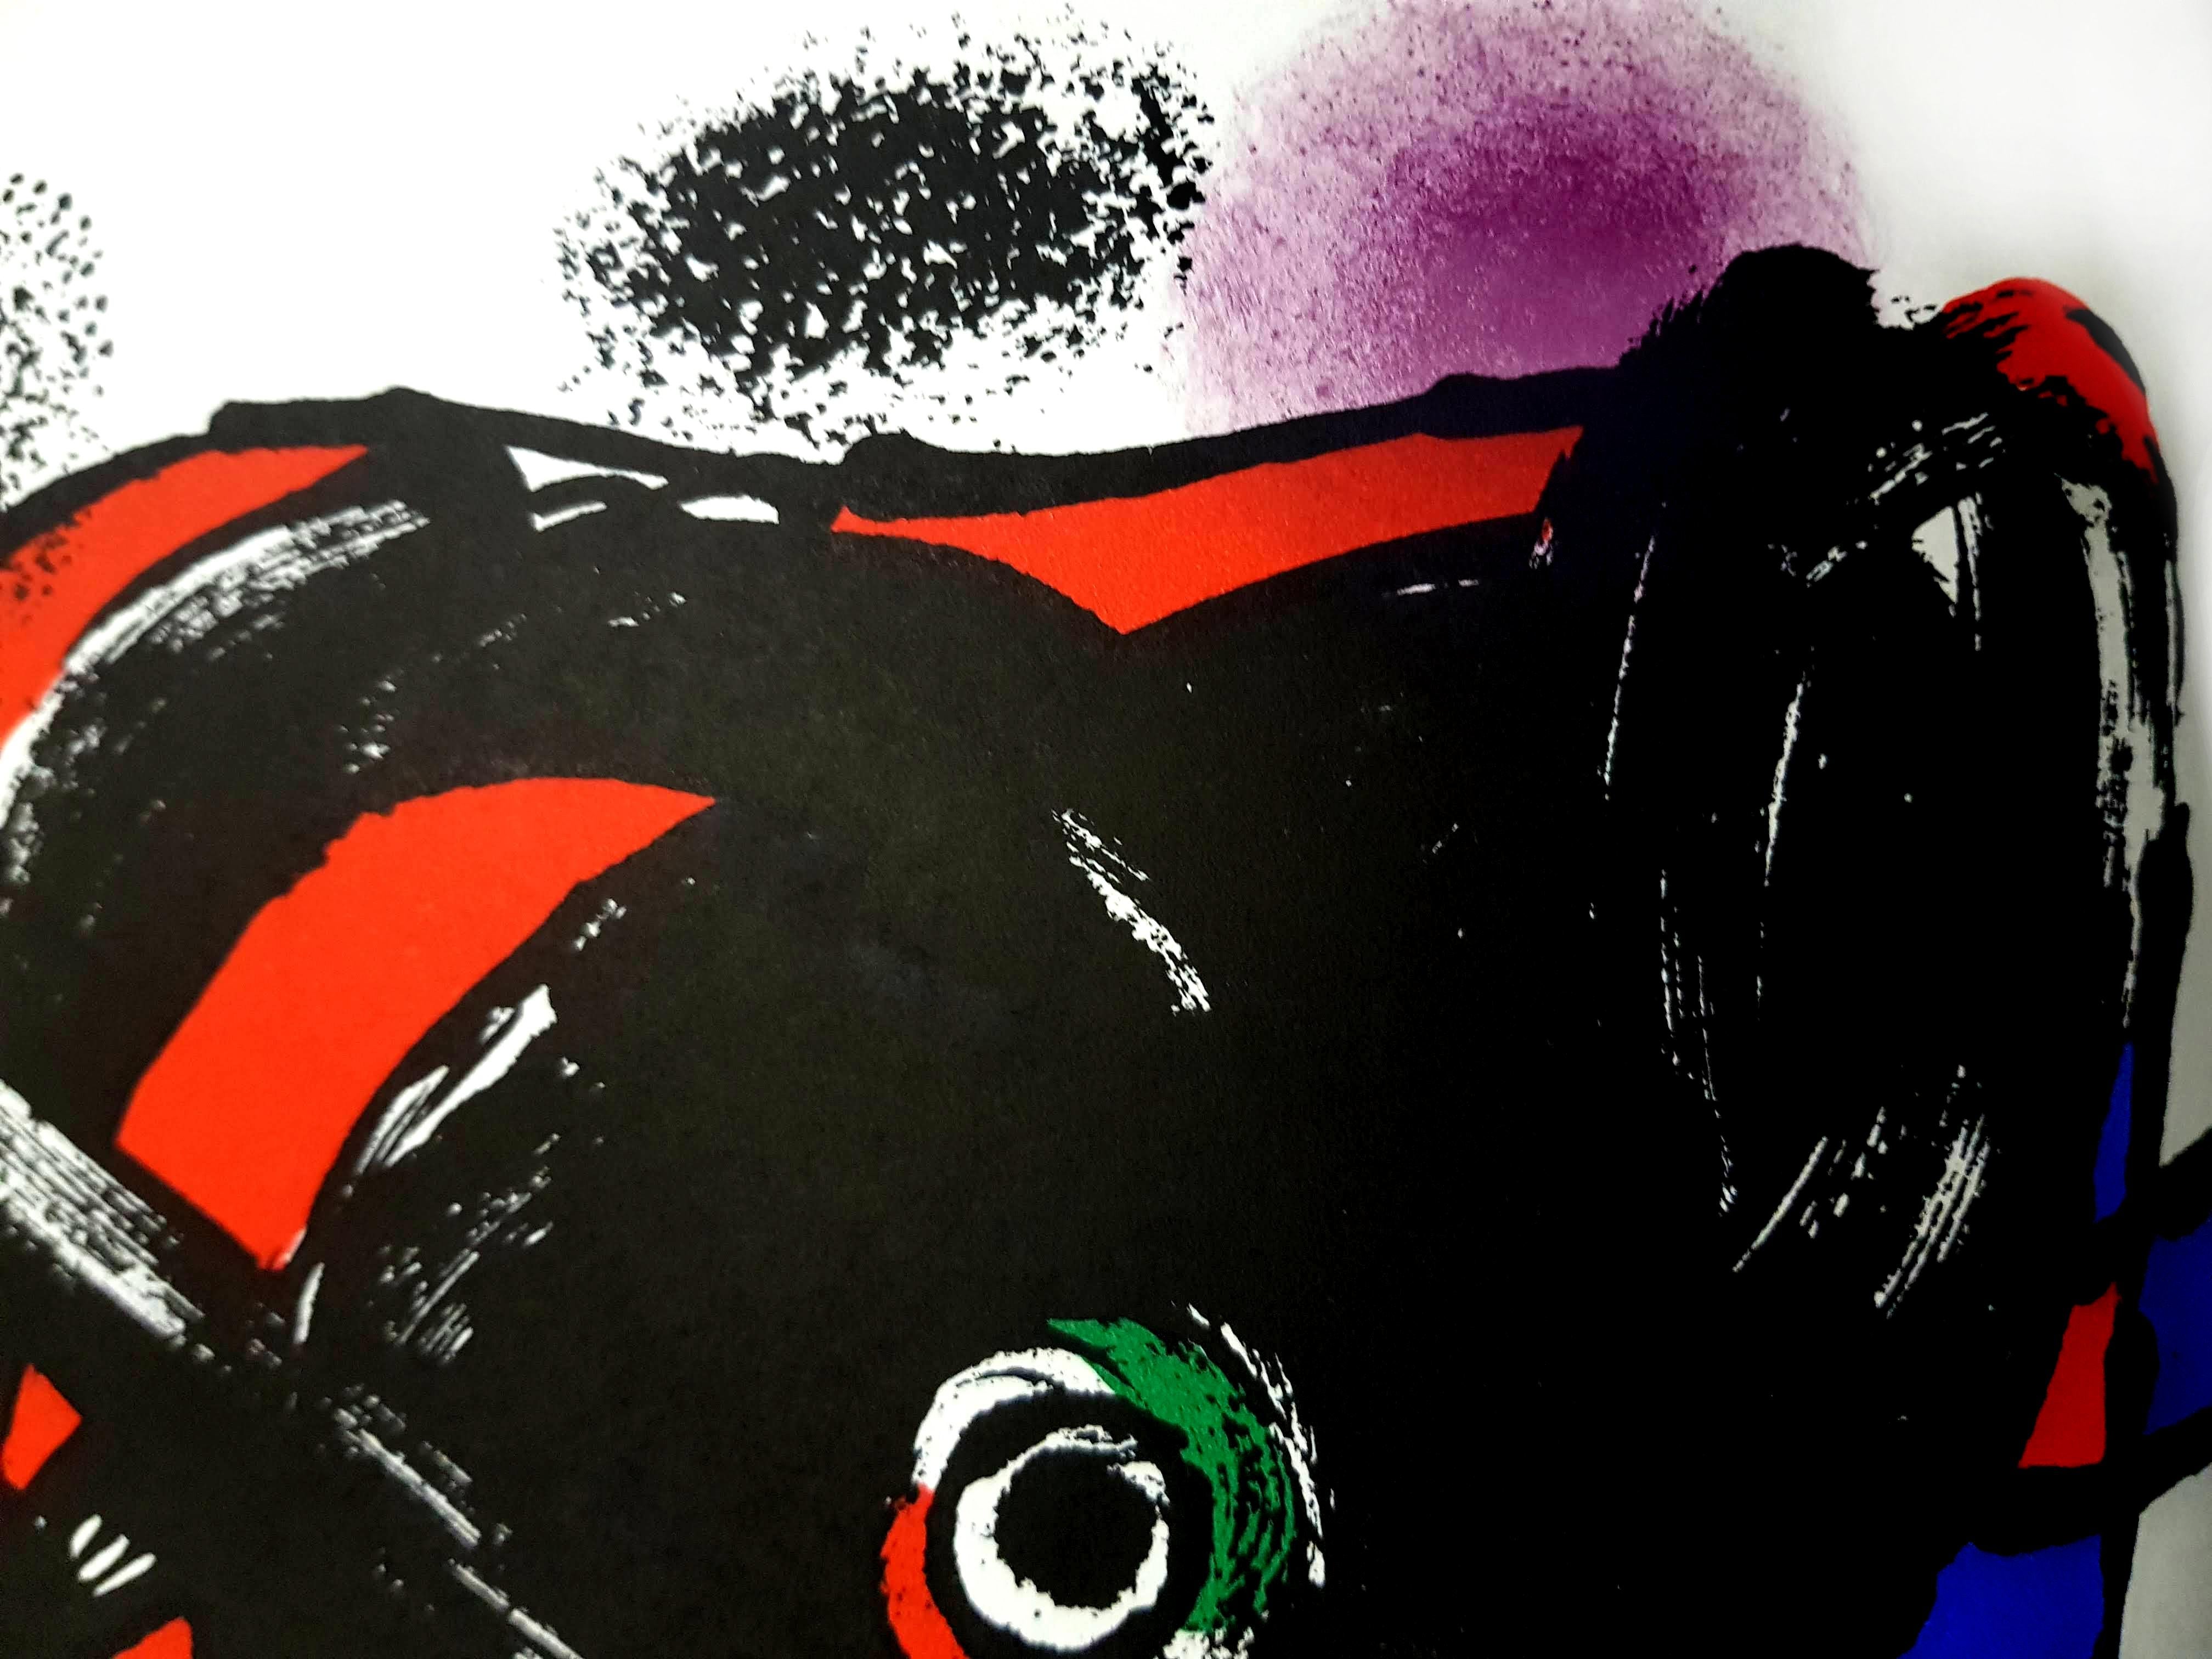 Joan Miro - Original Lithograph - Black Print by Joan Miró